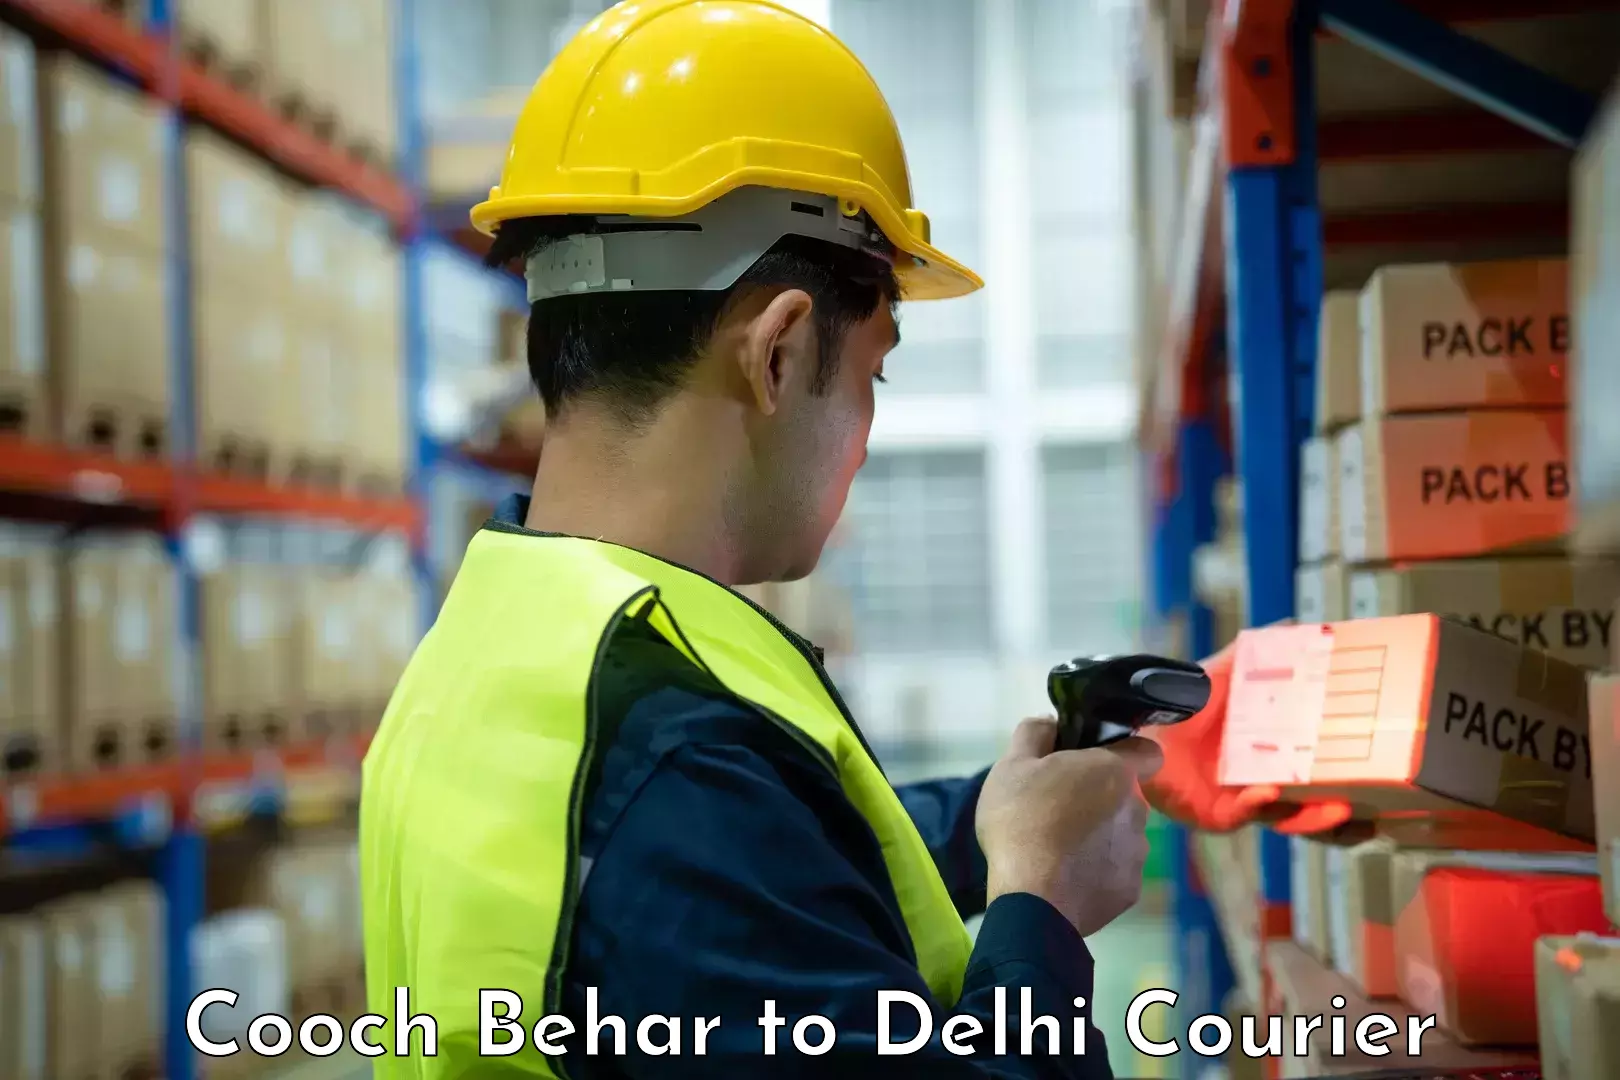 Professional movers Cooch Behar to Delhi